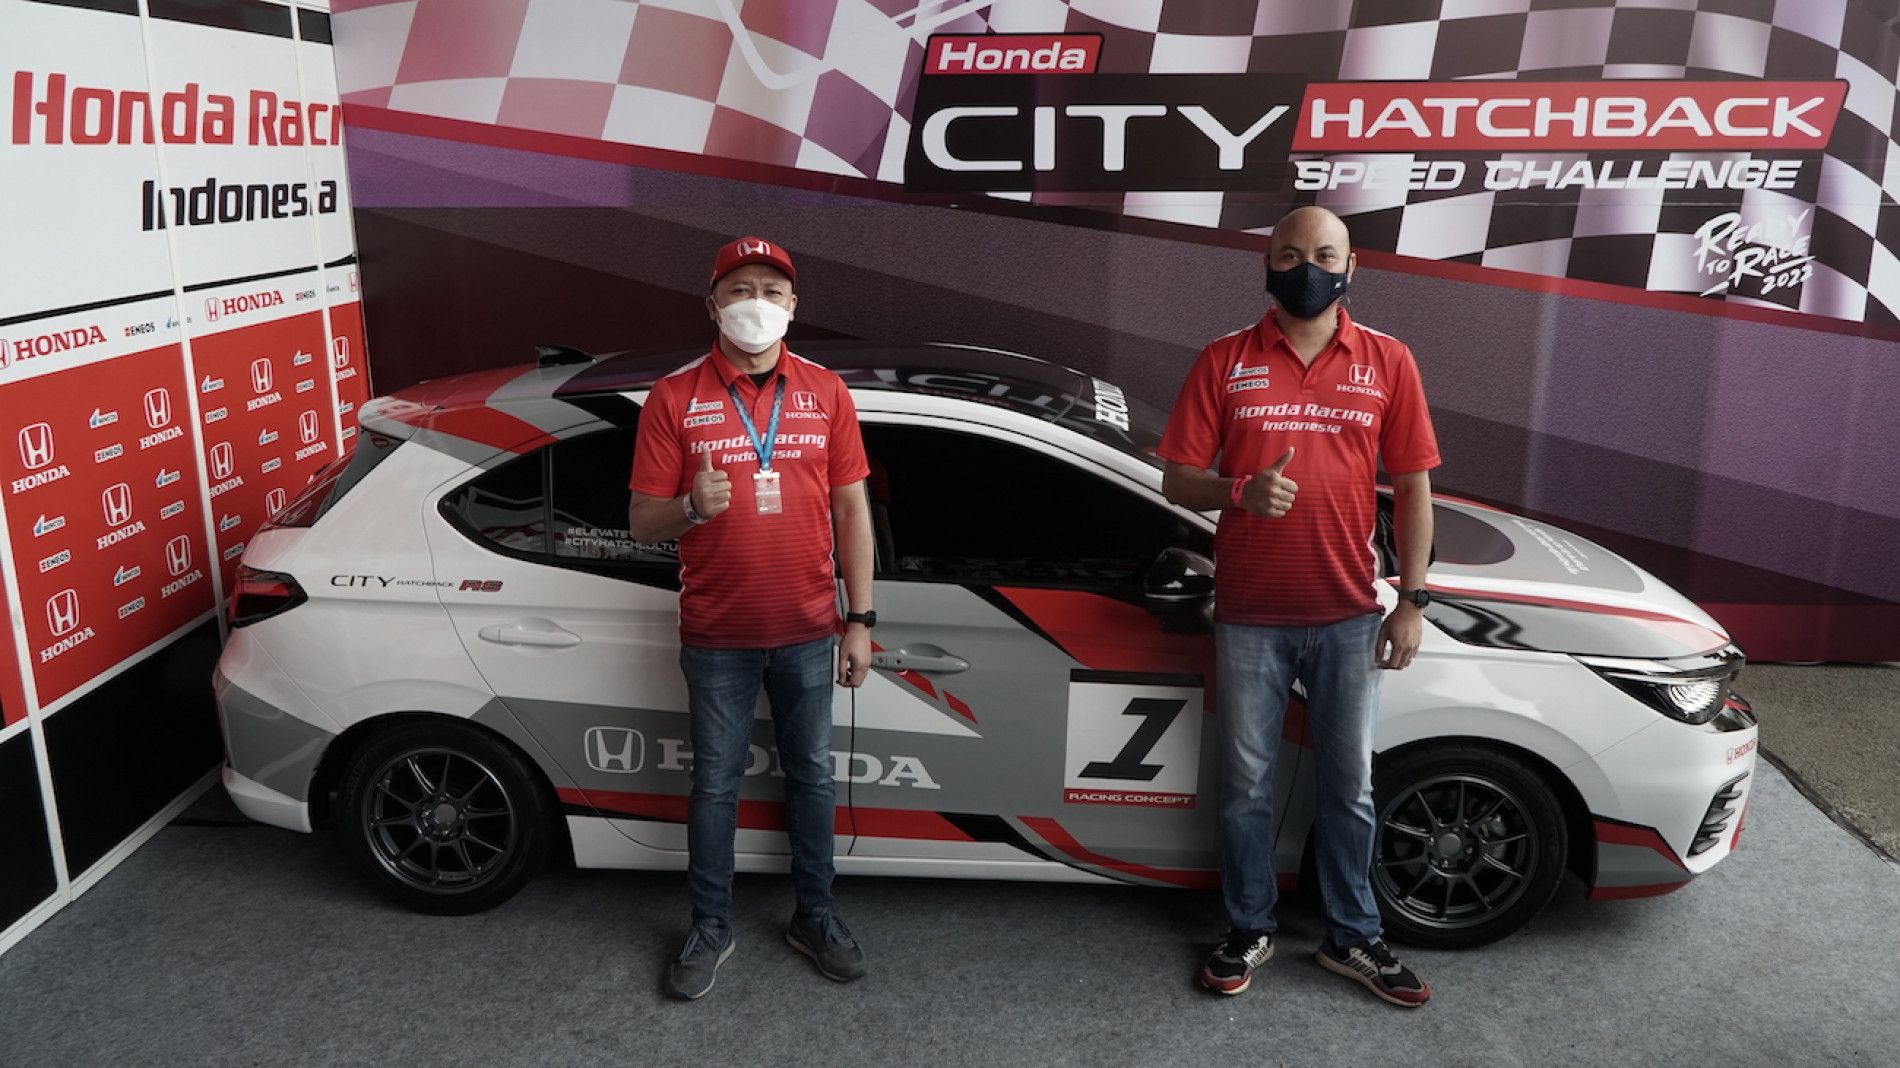 Musim Terakhir Honda Jazz, Honda City Hatchback Siap Berlaga di Ajang Balap 2022